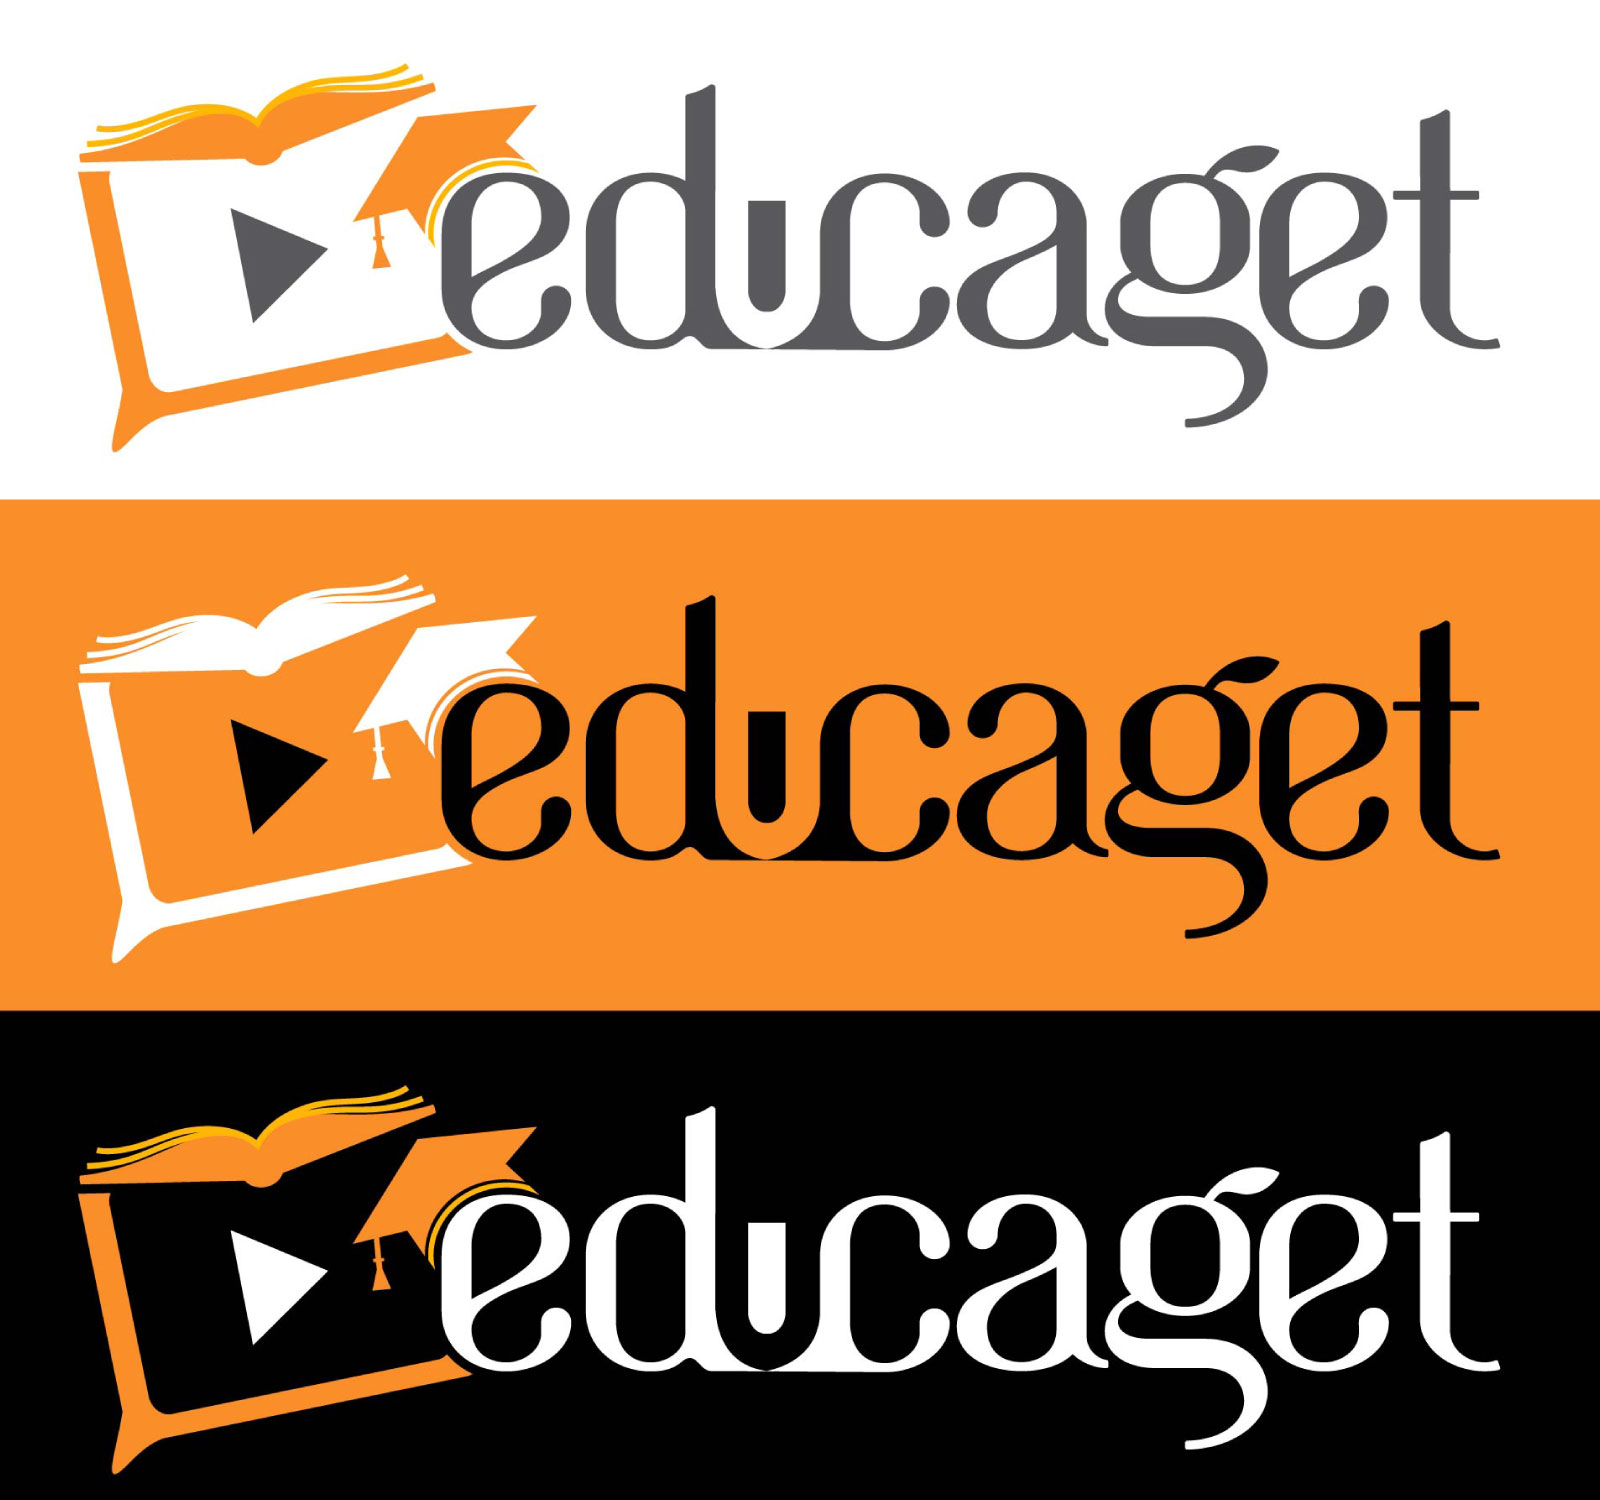 Educaget Logo